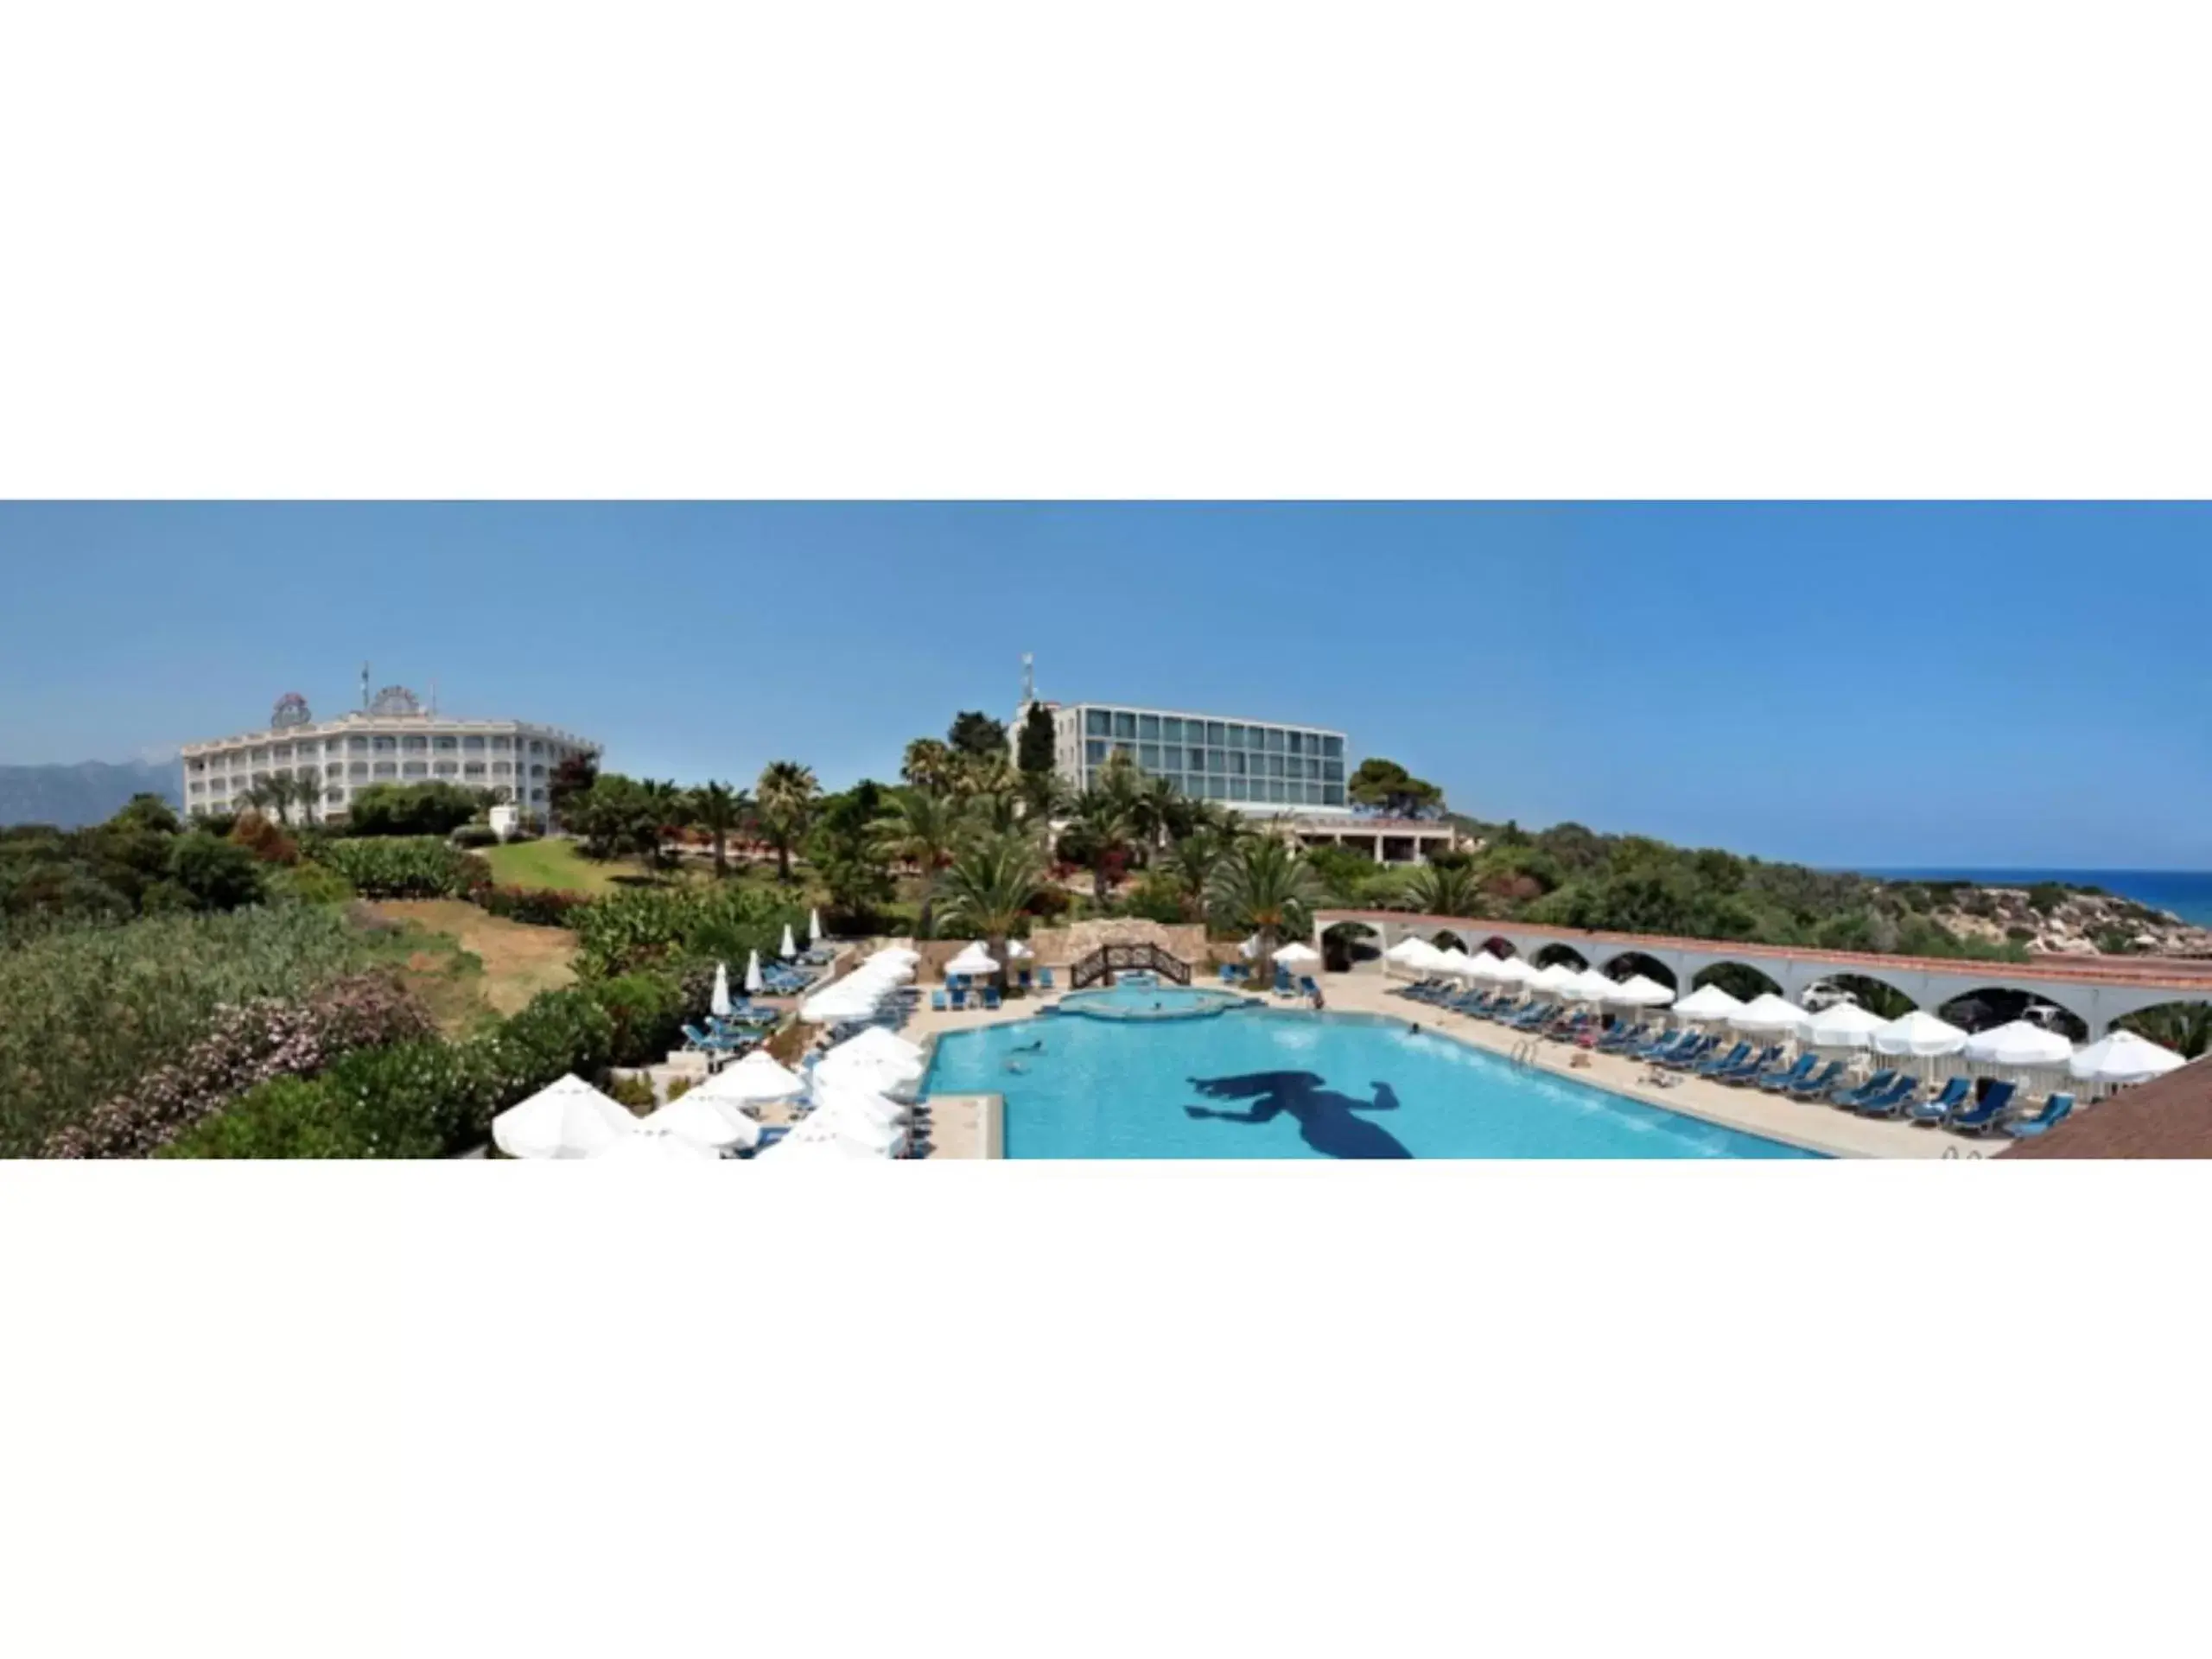 Property building, Pool View in Denizkizi Hotel